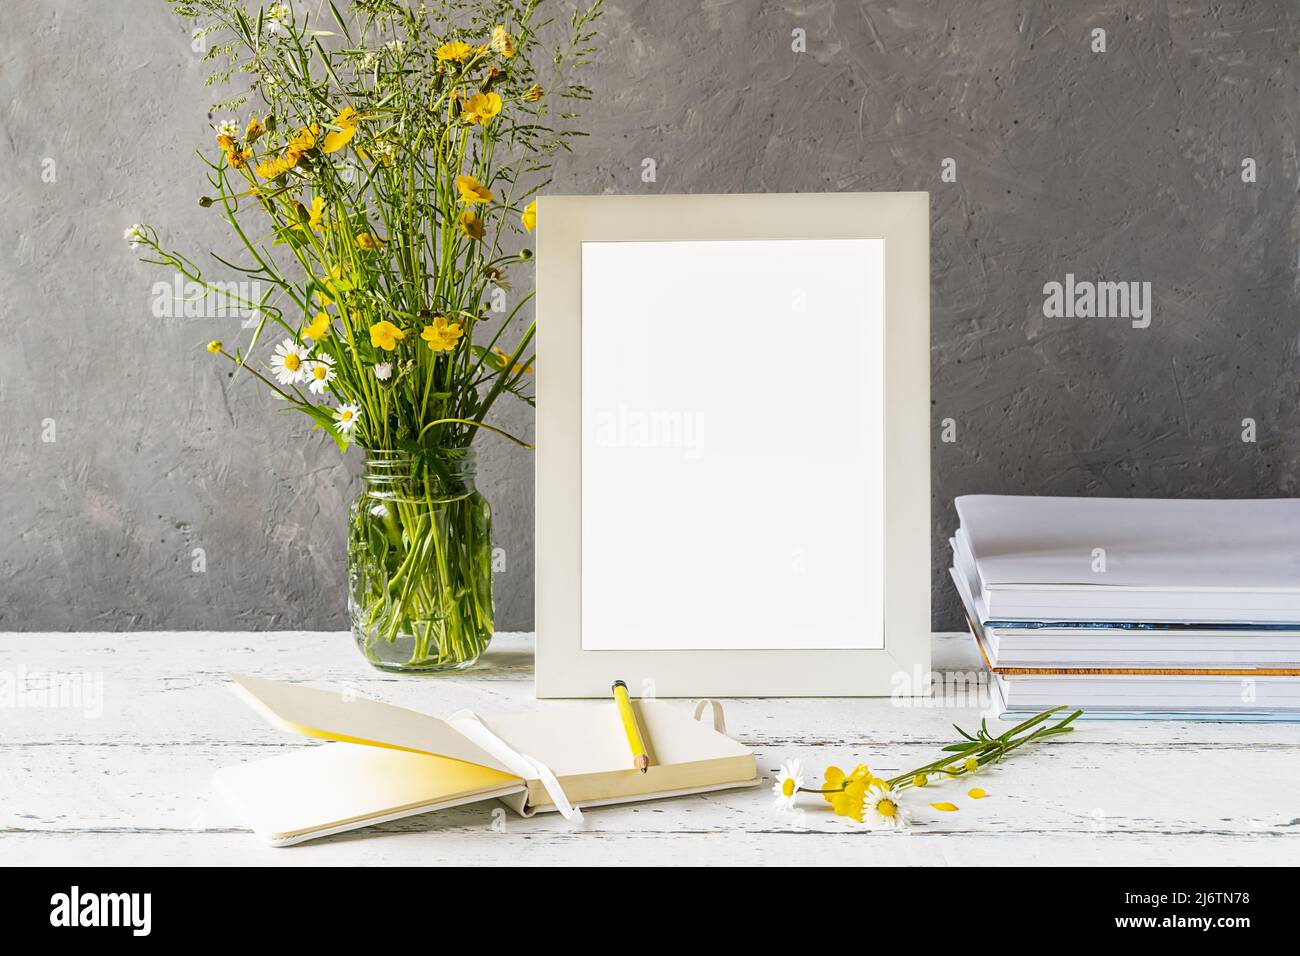 Modellerstellung. Weißer Rahmen auf Holztisch mit grauem Betonhintergrund, Büchern, Notizbuch, Bleistift und Wildblumen Stockfoto